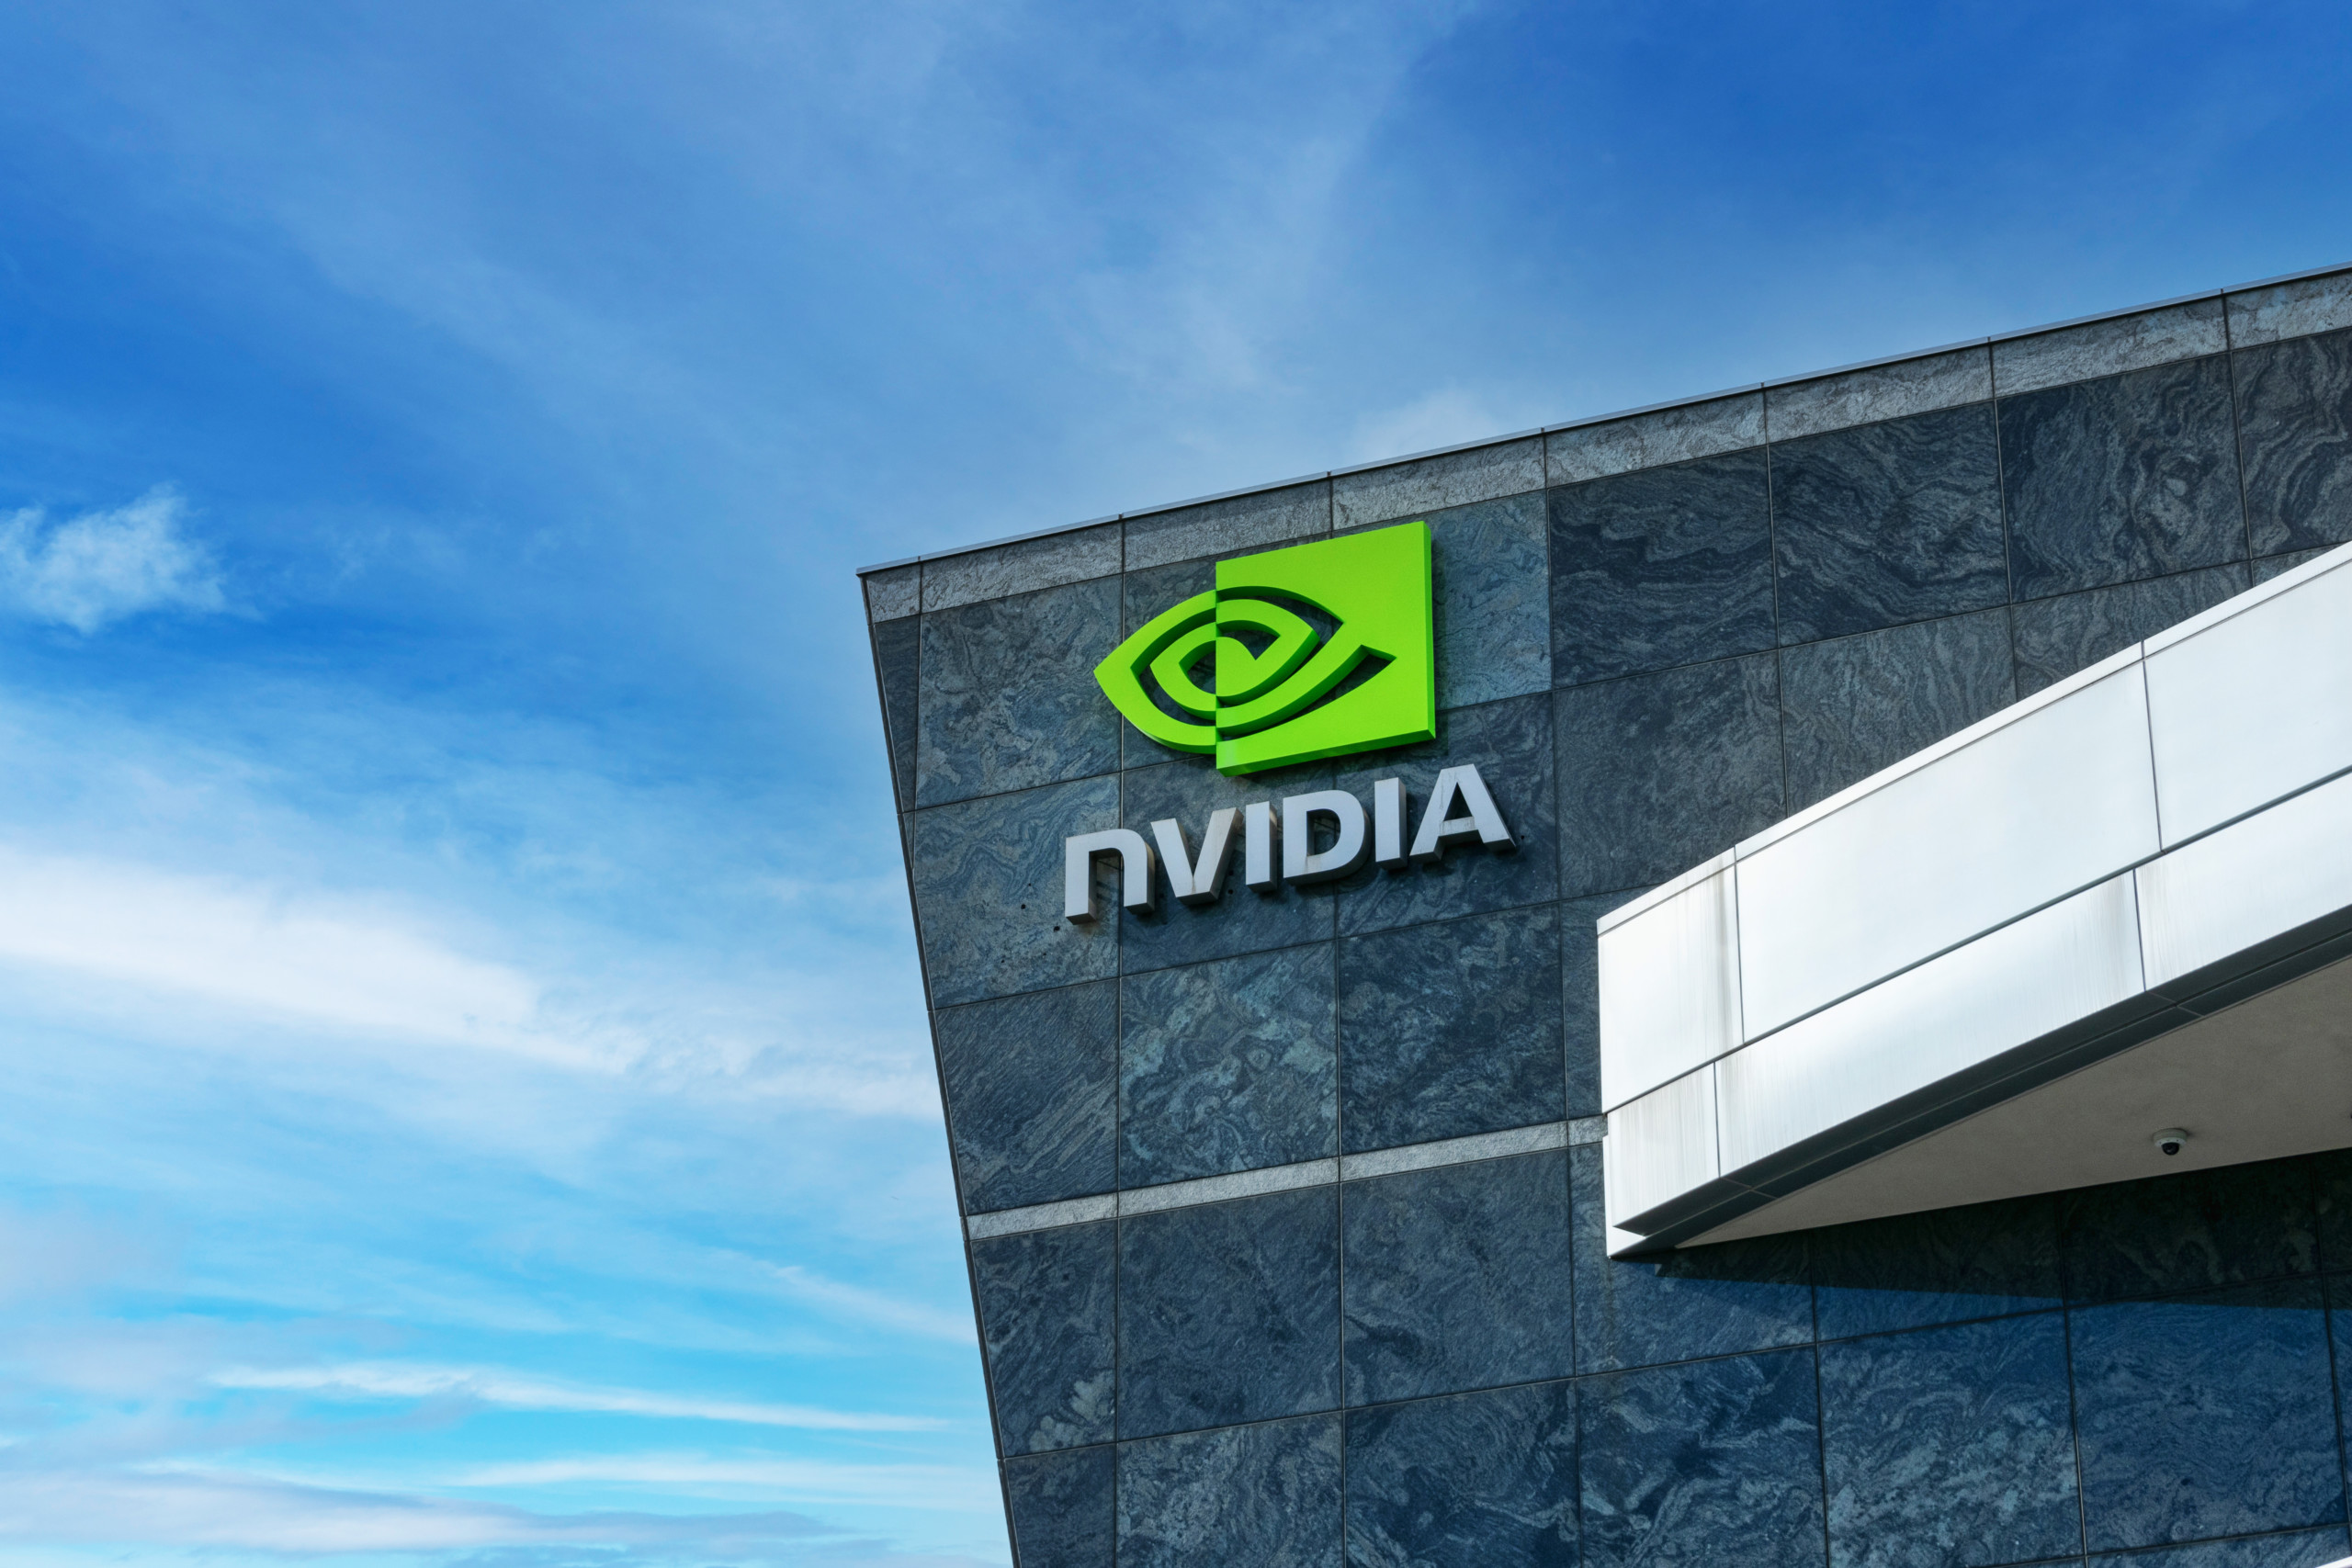 Wedbush-Analyst: NVIDIAs Ergebnisse zeigen, dass die KI-Revolution erst am Anfang steht